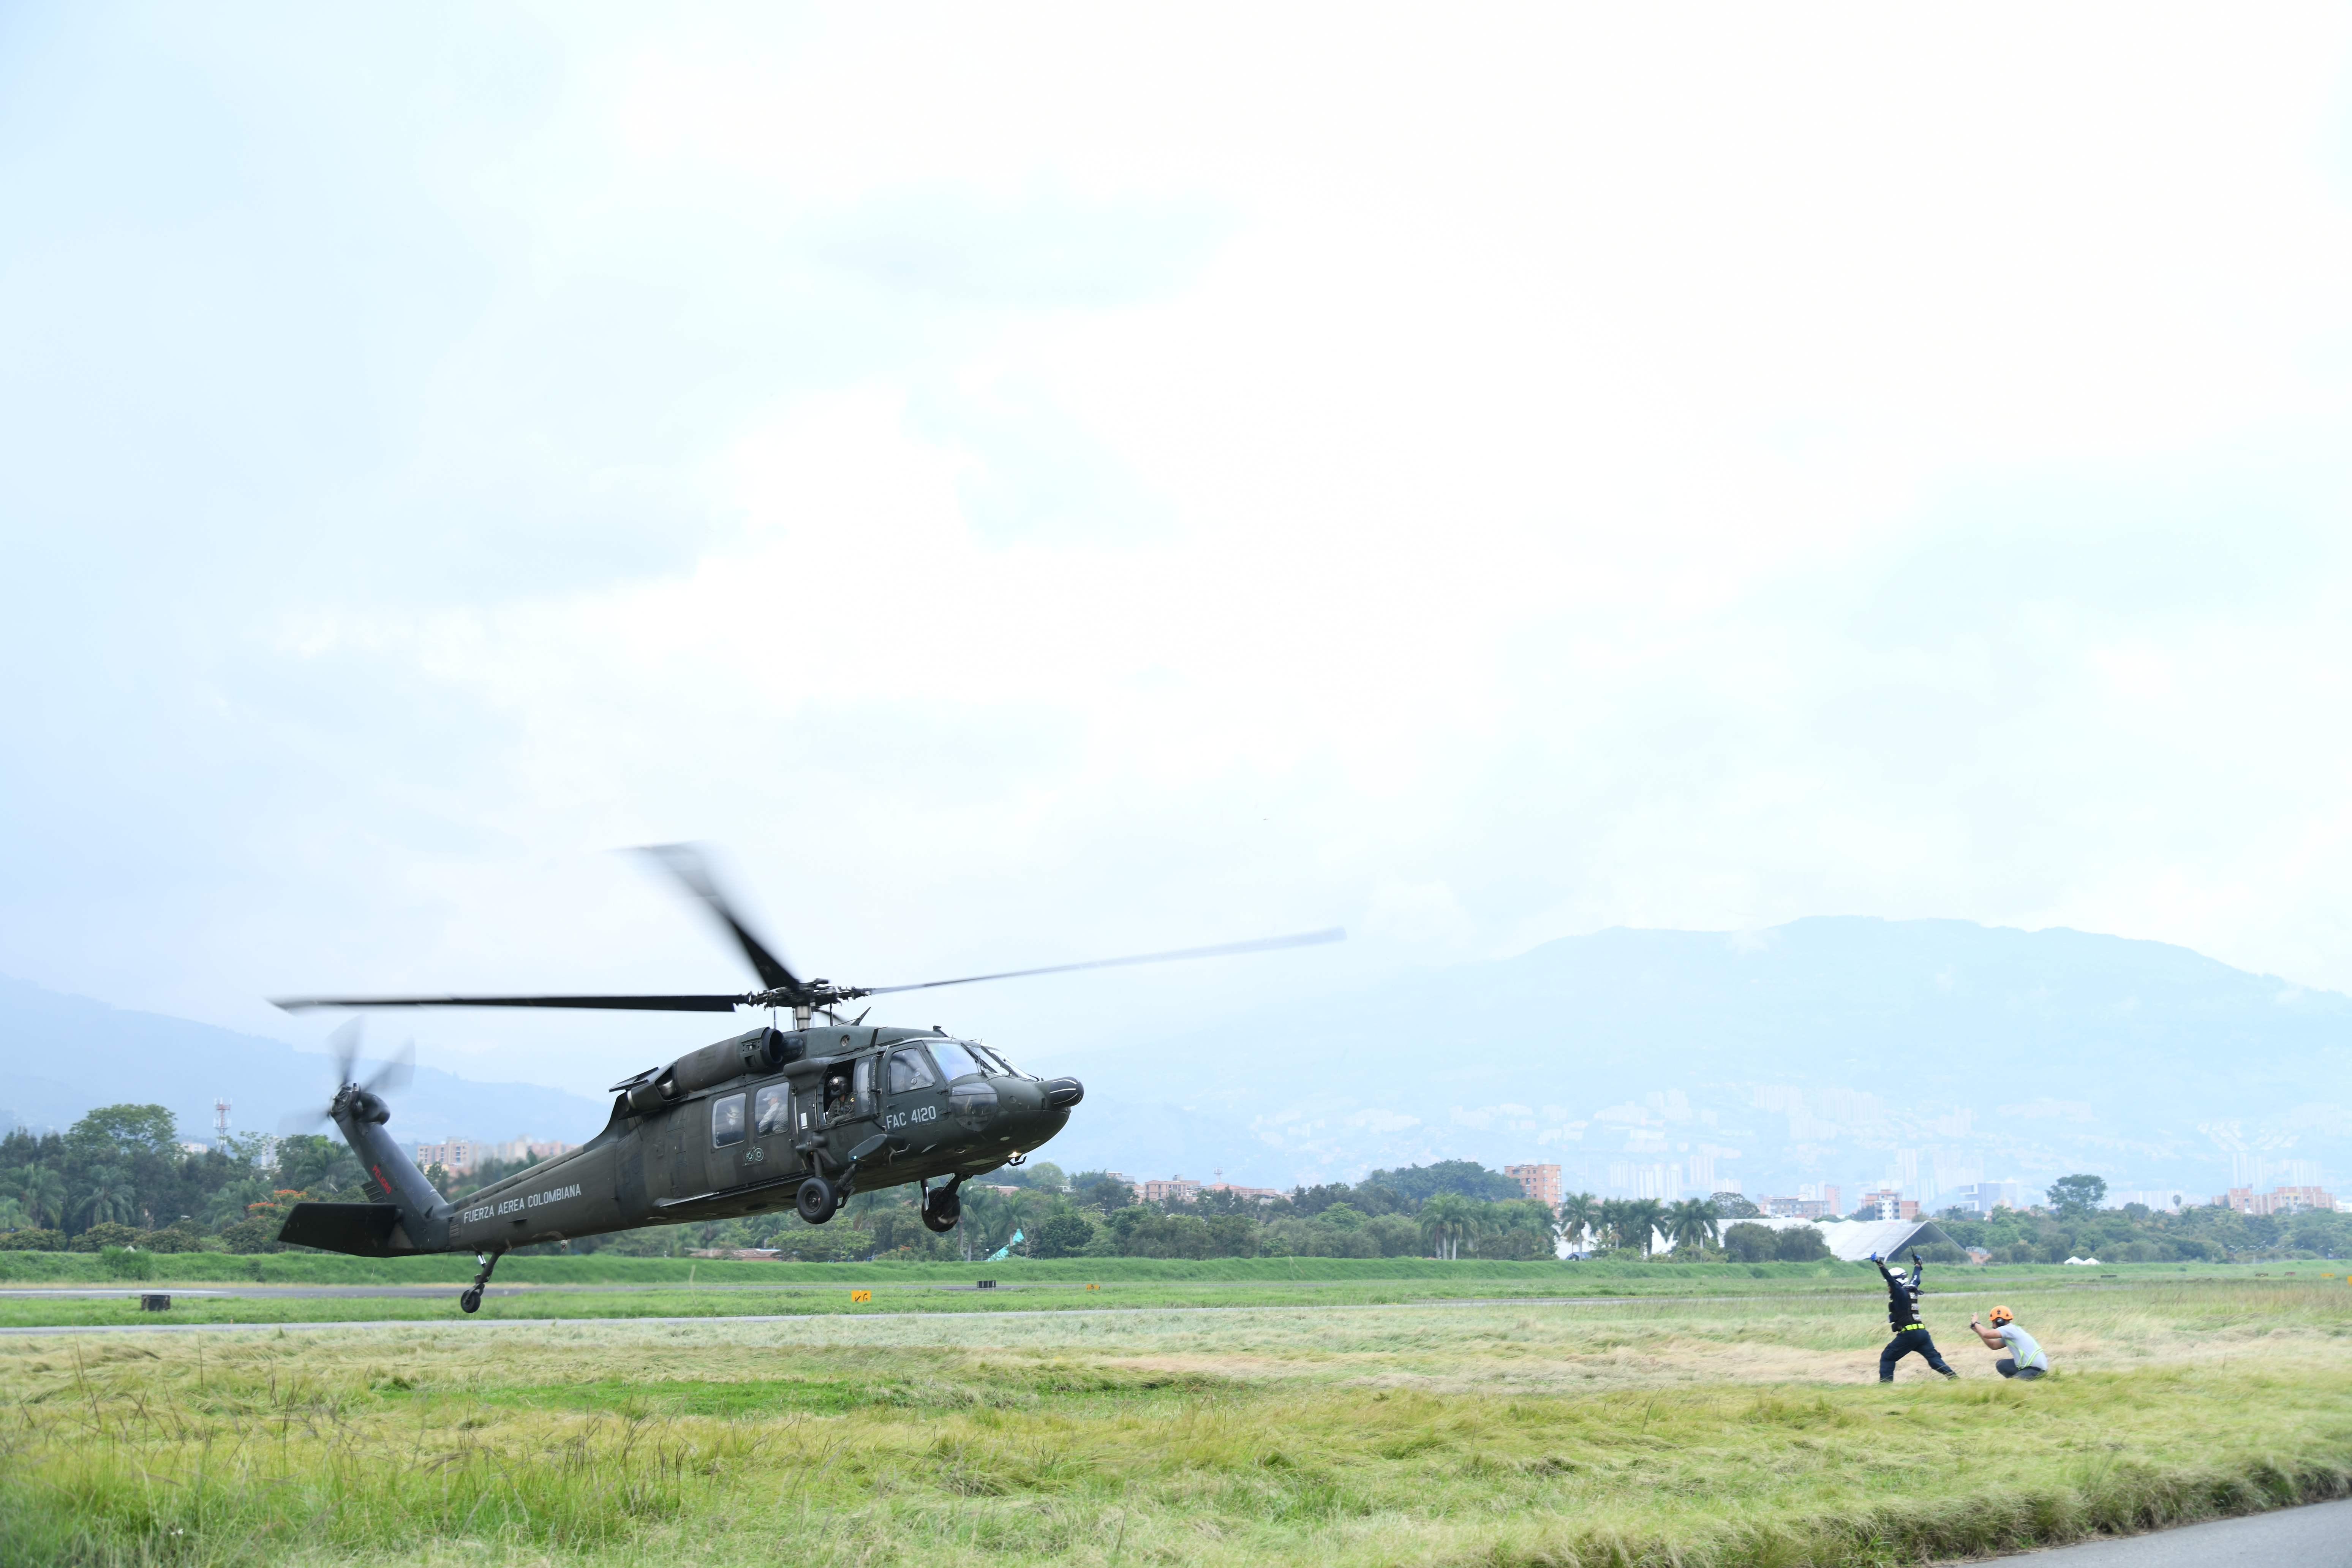 Fuerza Aérea Colombiana participó en simulacro de accidente aéreo